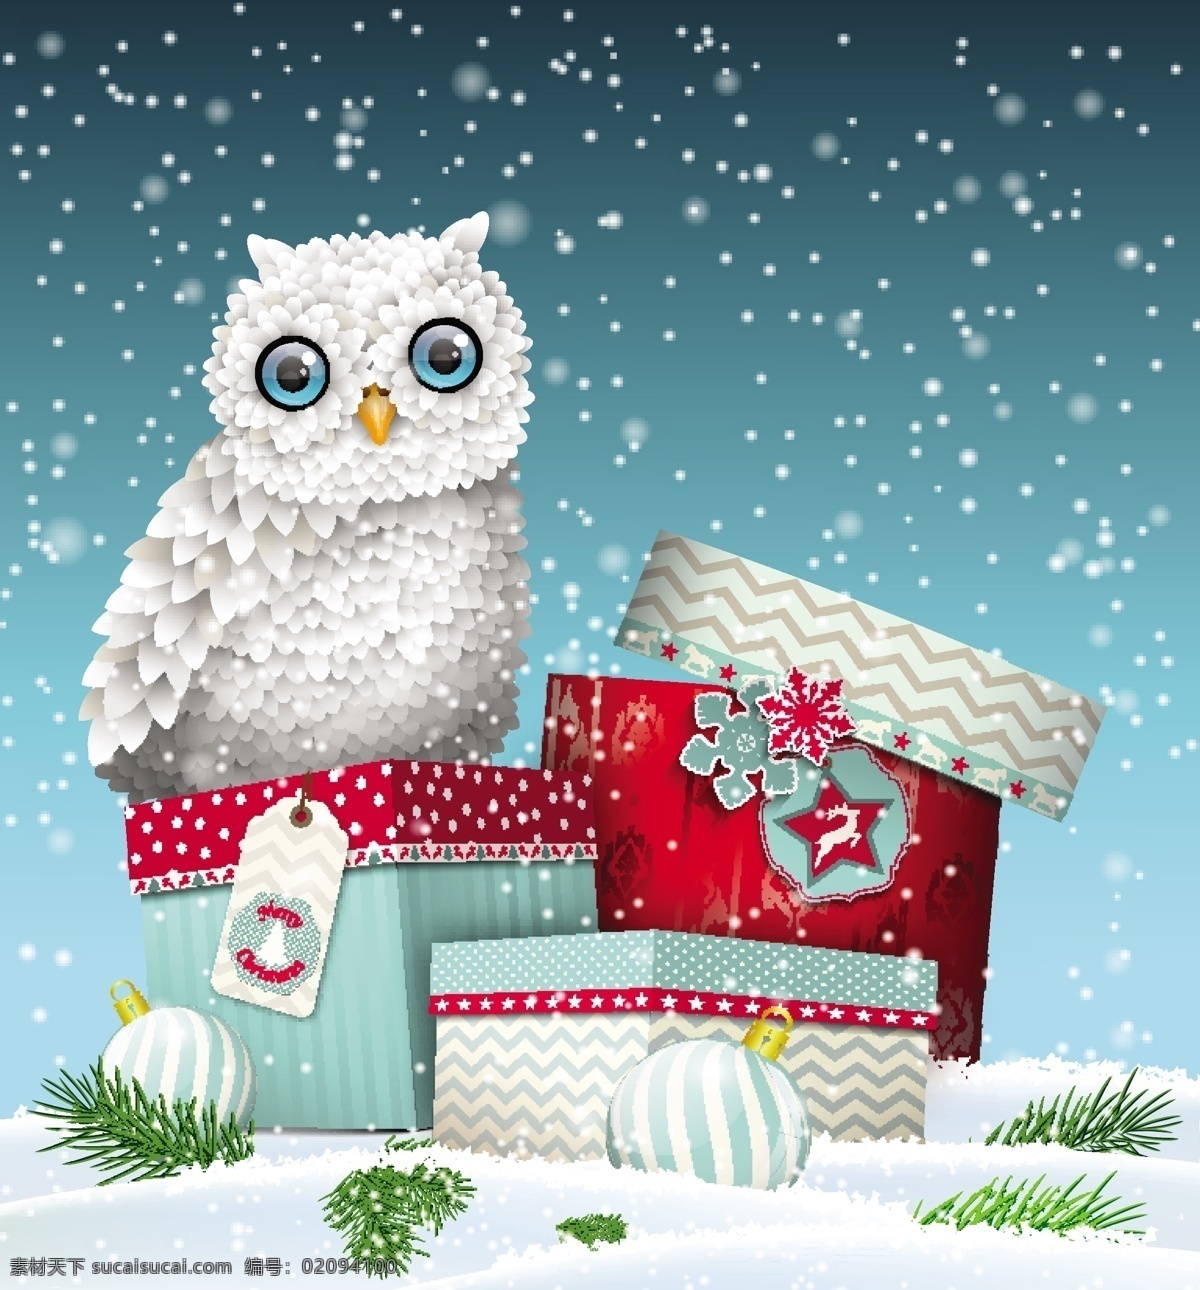 圣诞 猫头鹰 插画 猫罐头 圣诞礼物 雪 圣诞背景 圣诞图案 圣诞节 节日素材 矢量素材